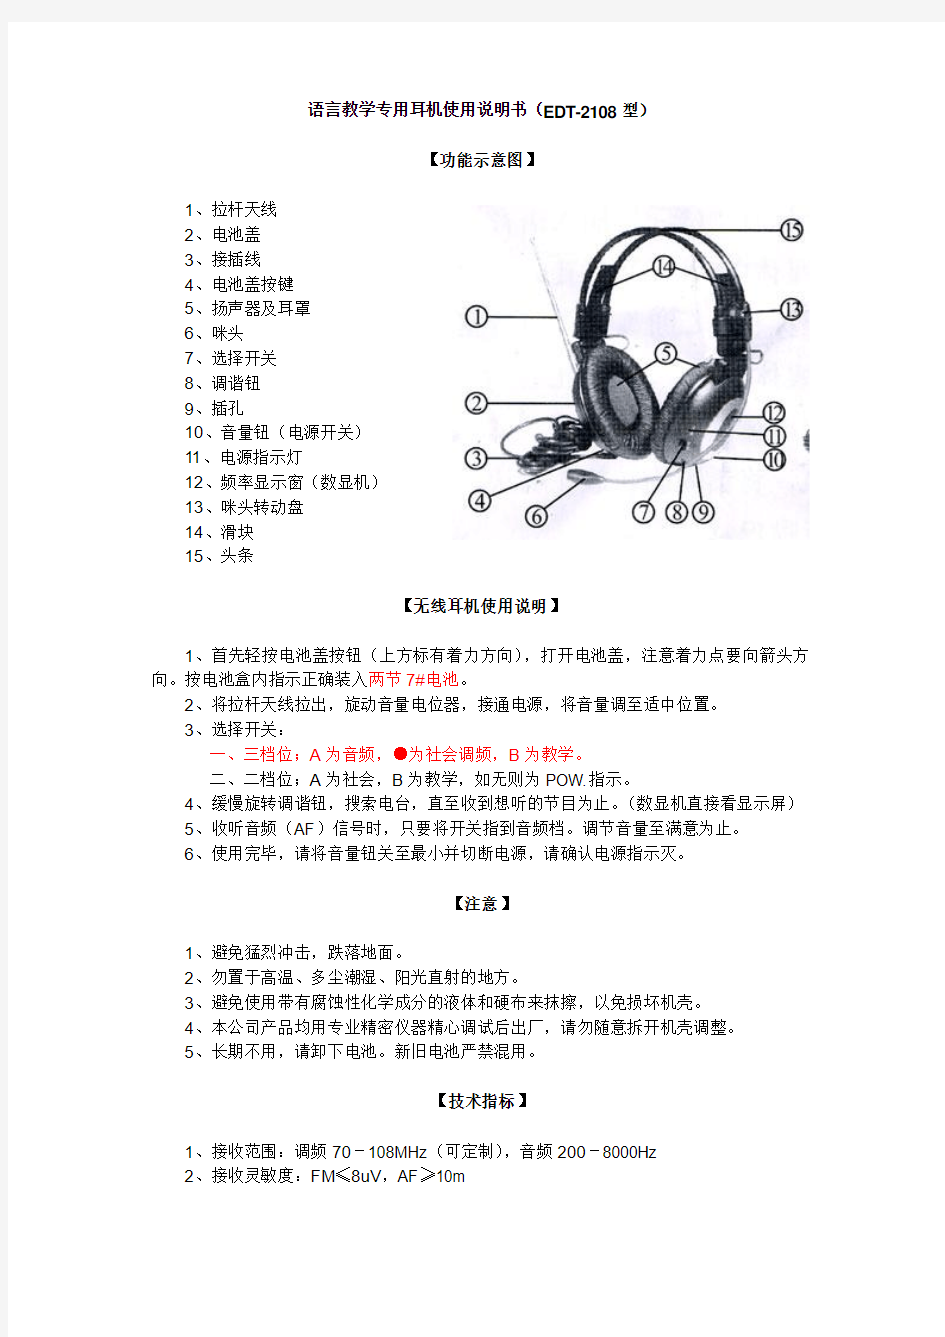 语言教学专用耳机使用说明书(EDT-2108型)